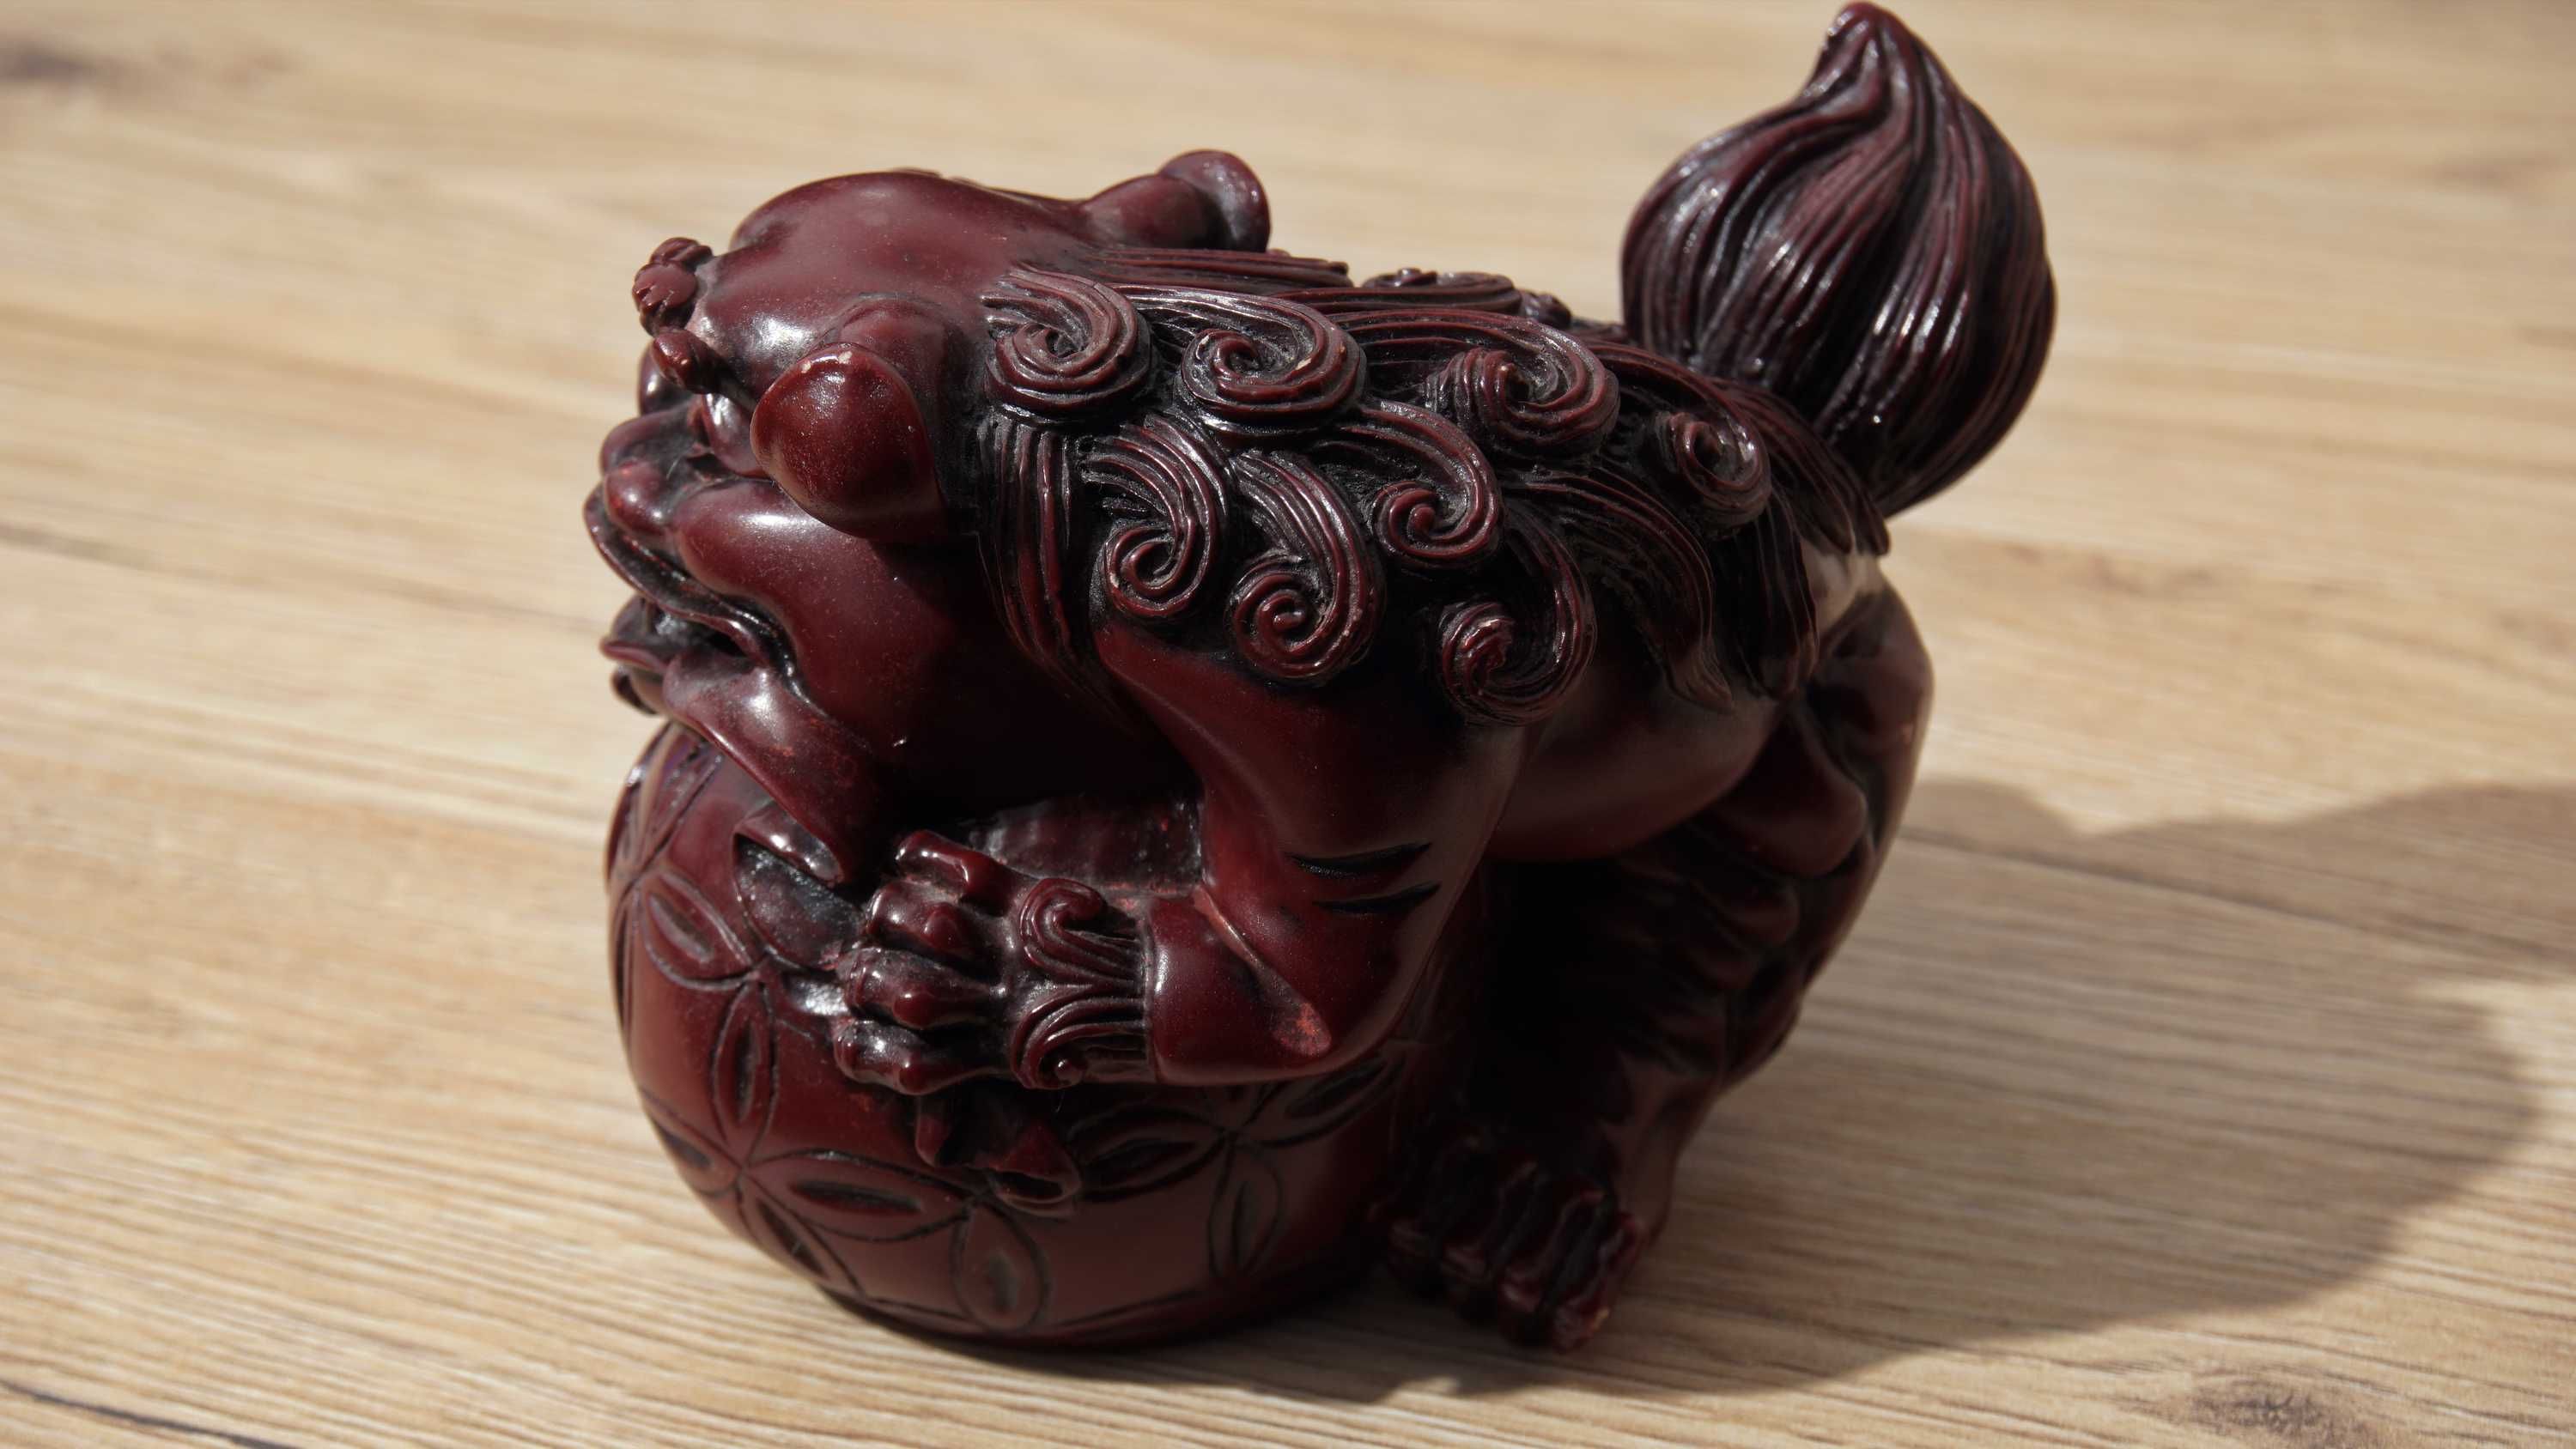 Doua figurine traditionale ornamentale - dragoni chinezesti